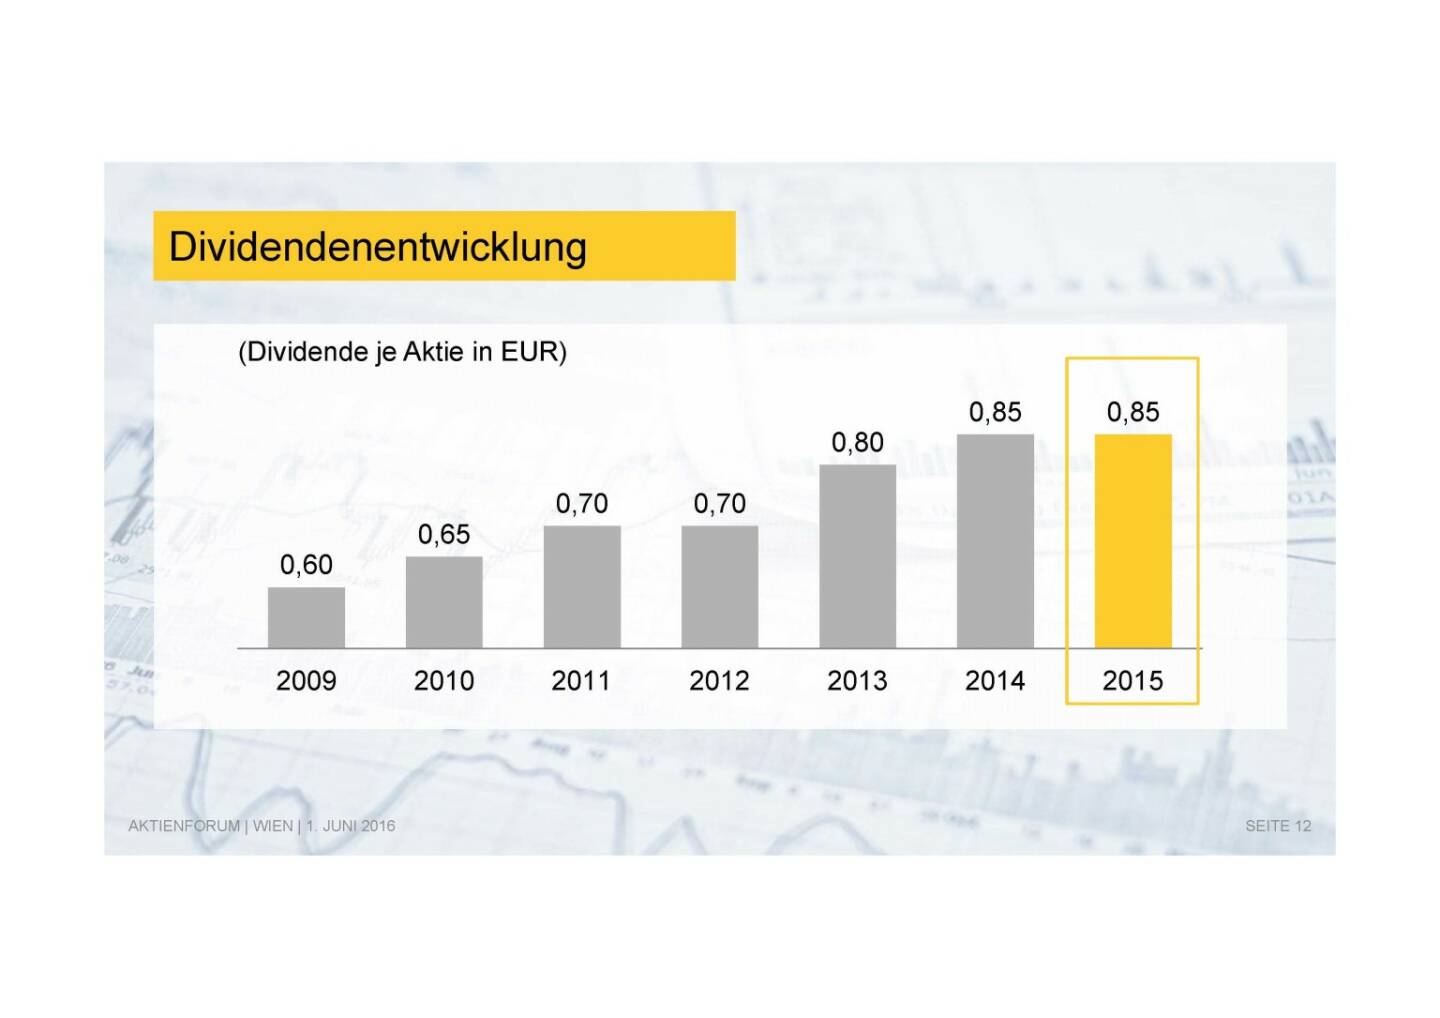 Deutsche Post - Dividendenentwicklung